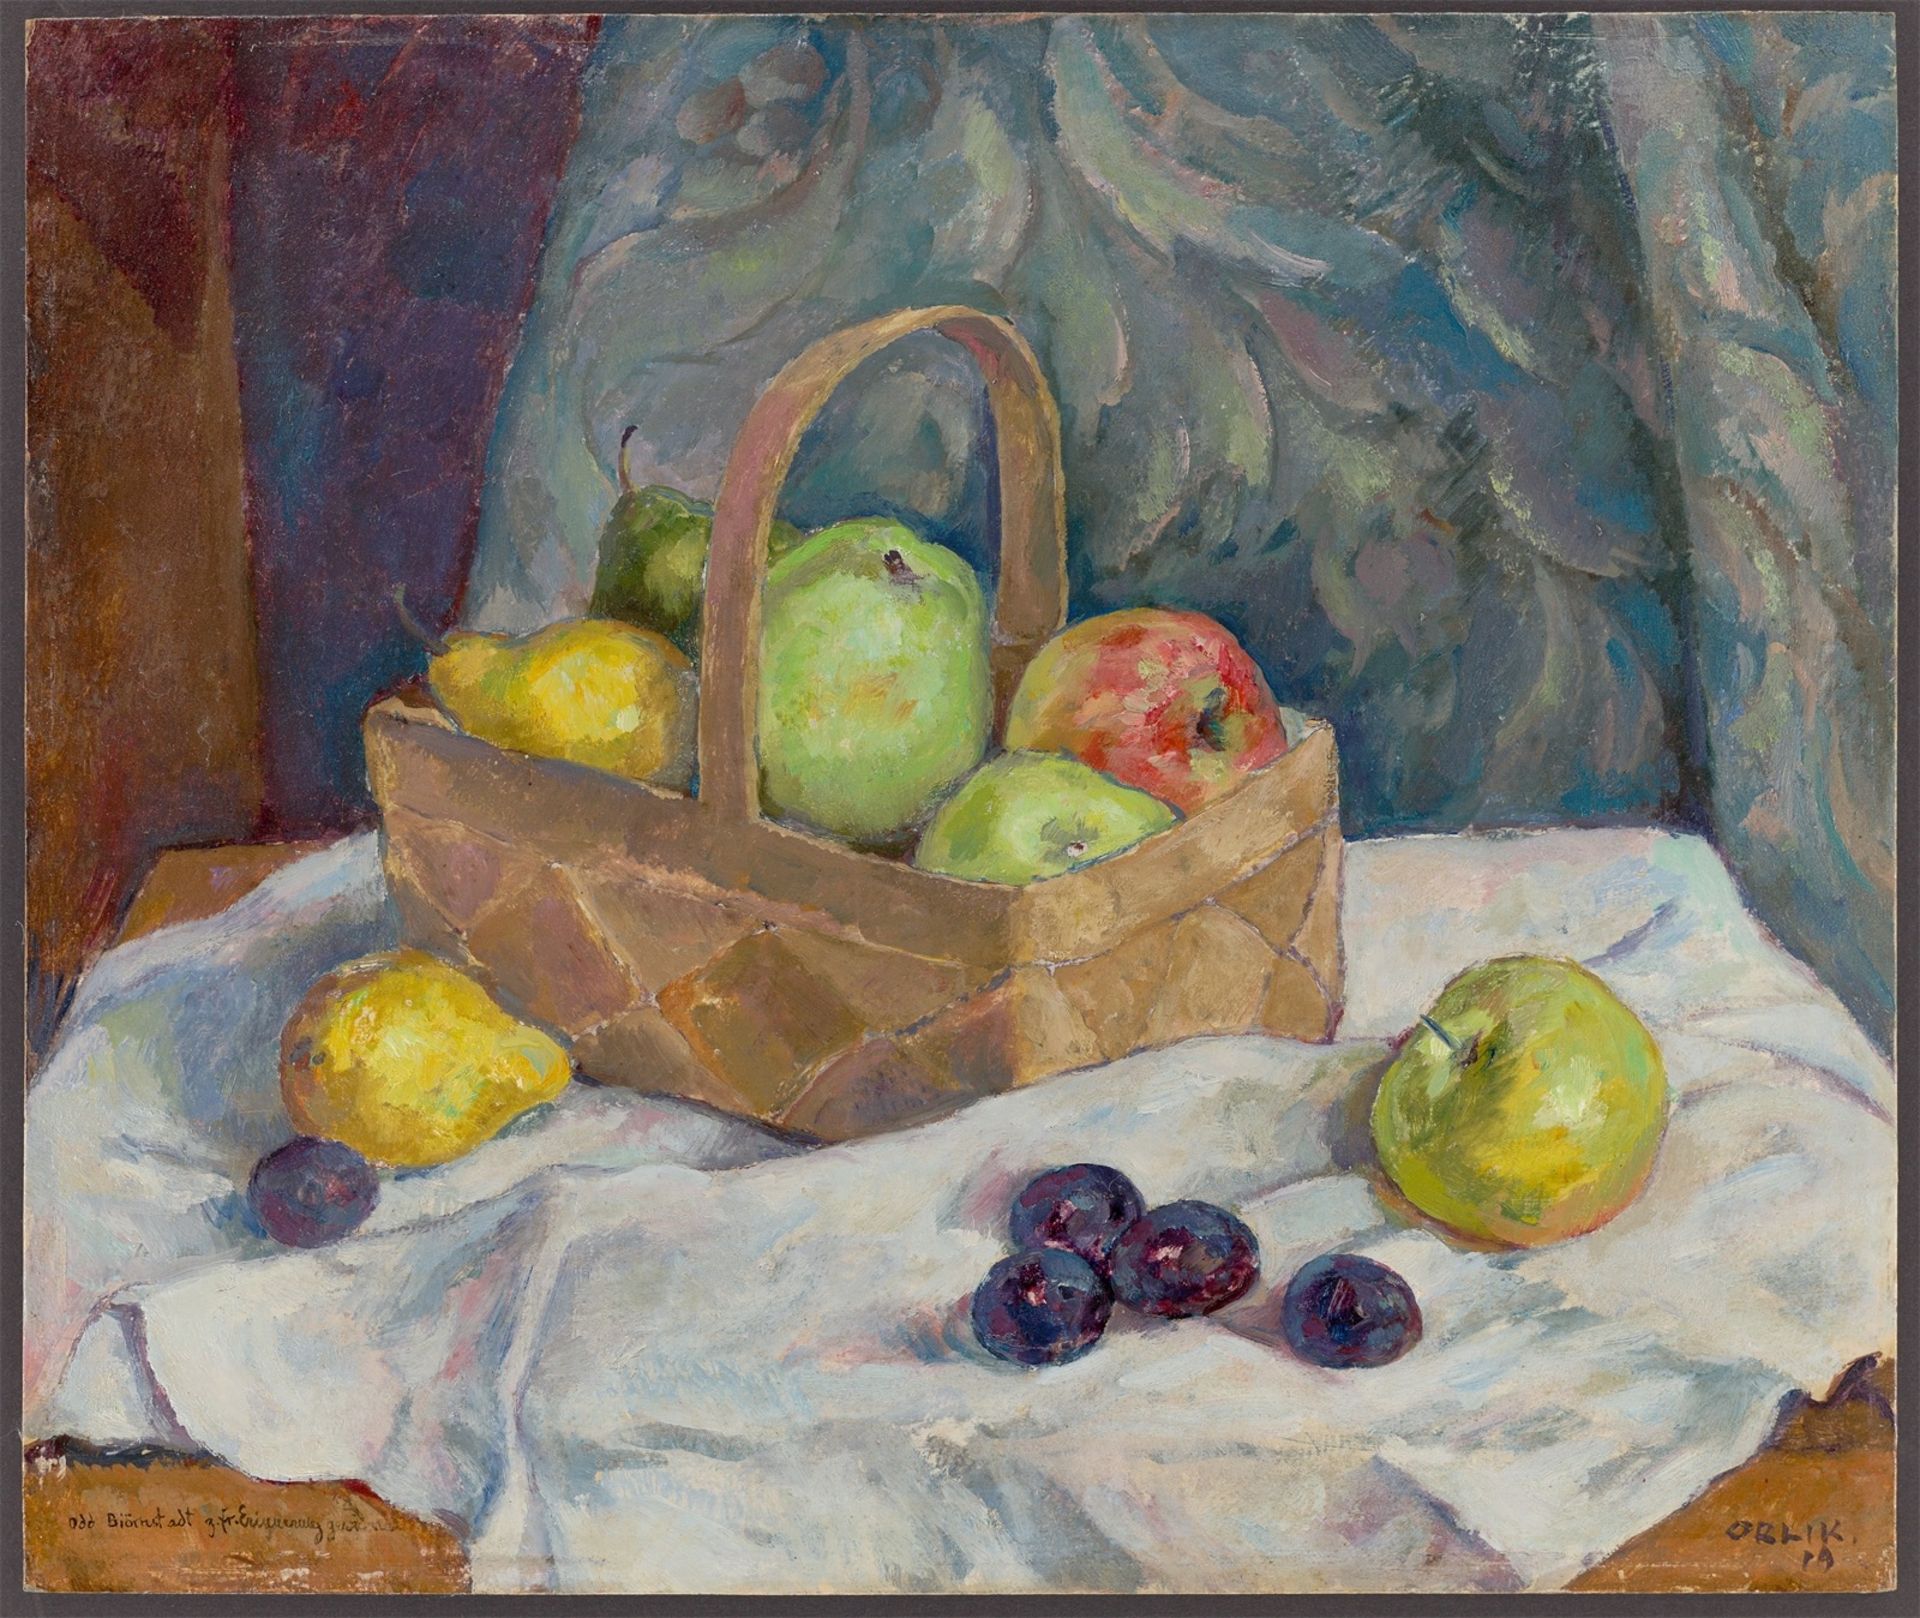 Emil Orlik. Stillleben mit Äpfeln, Birnen und Pflaumen. 1919 - Bild 2 aus 4